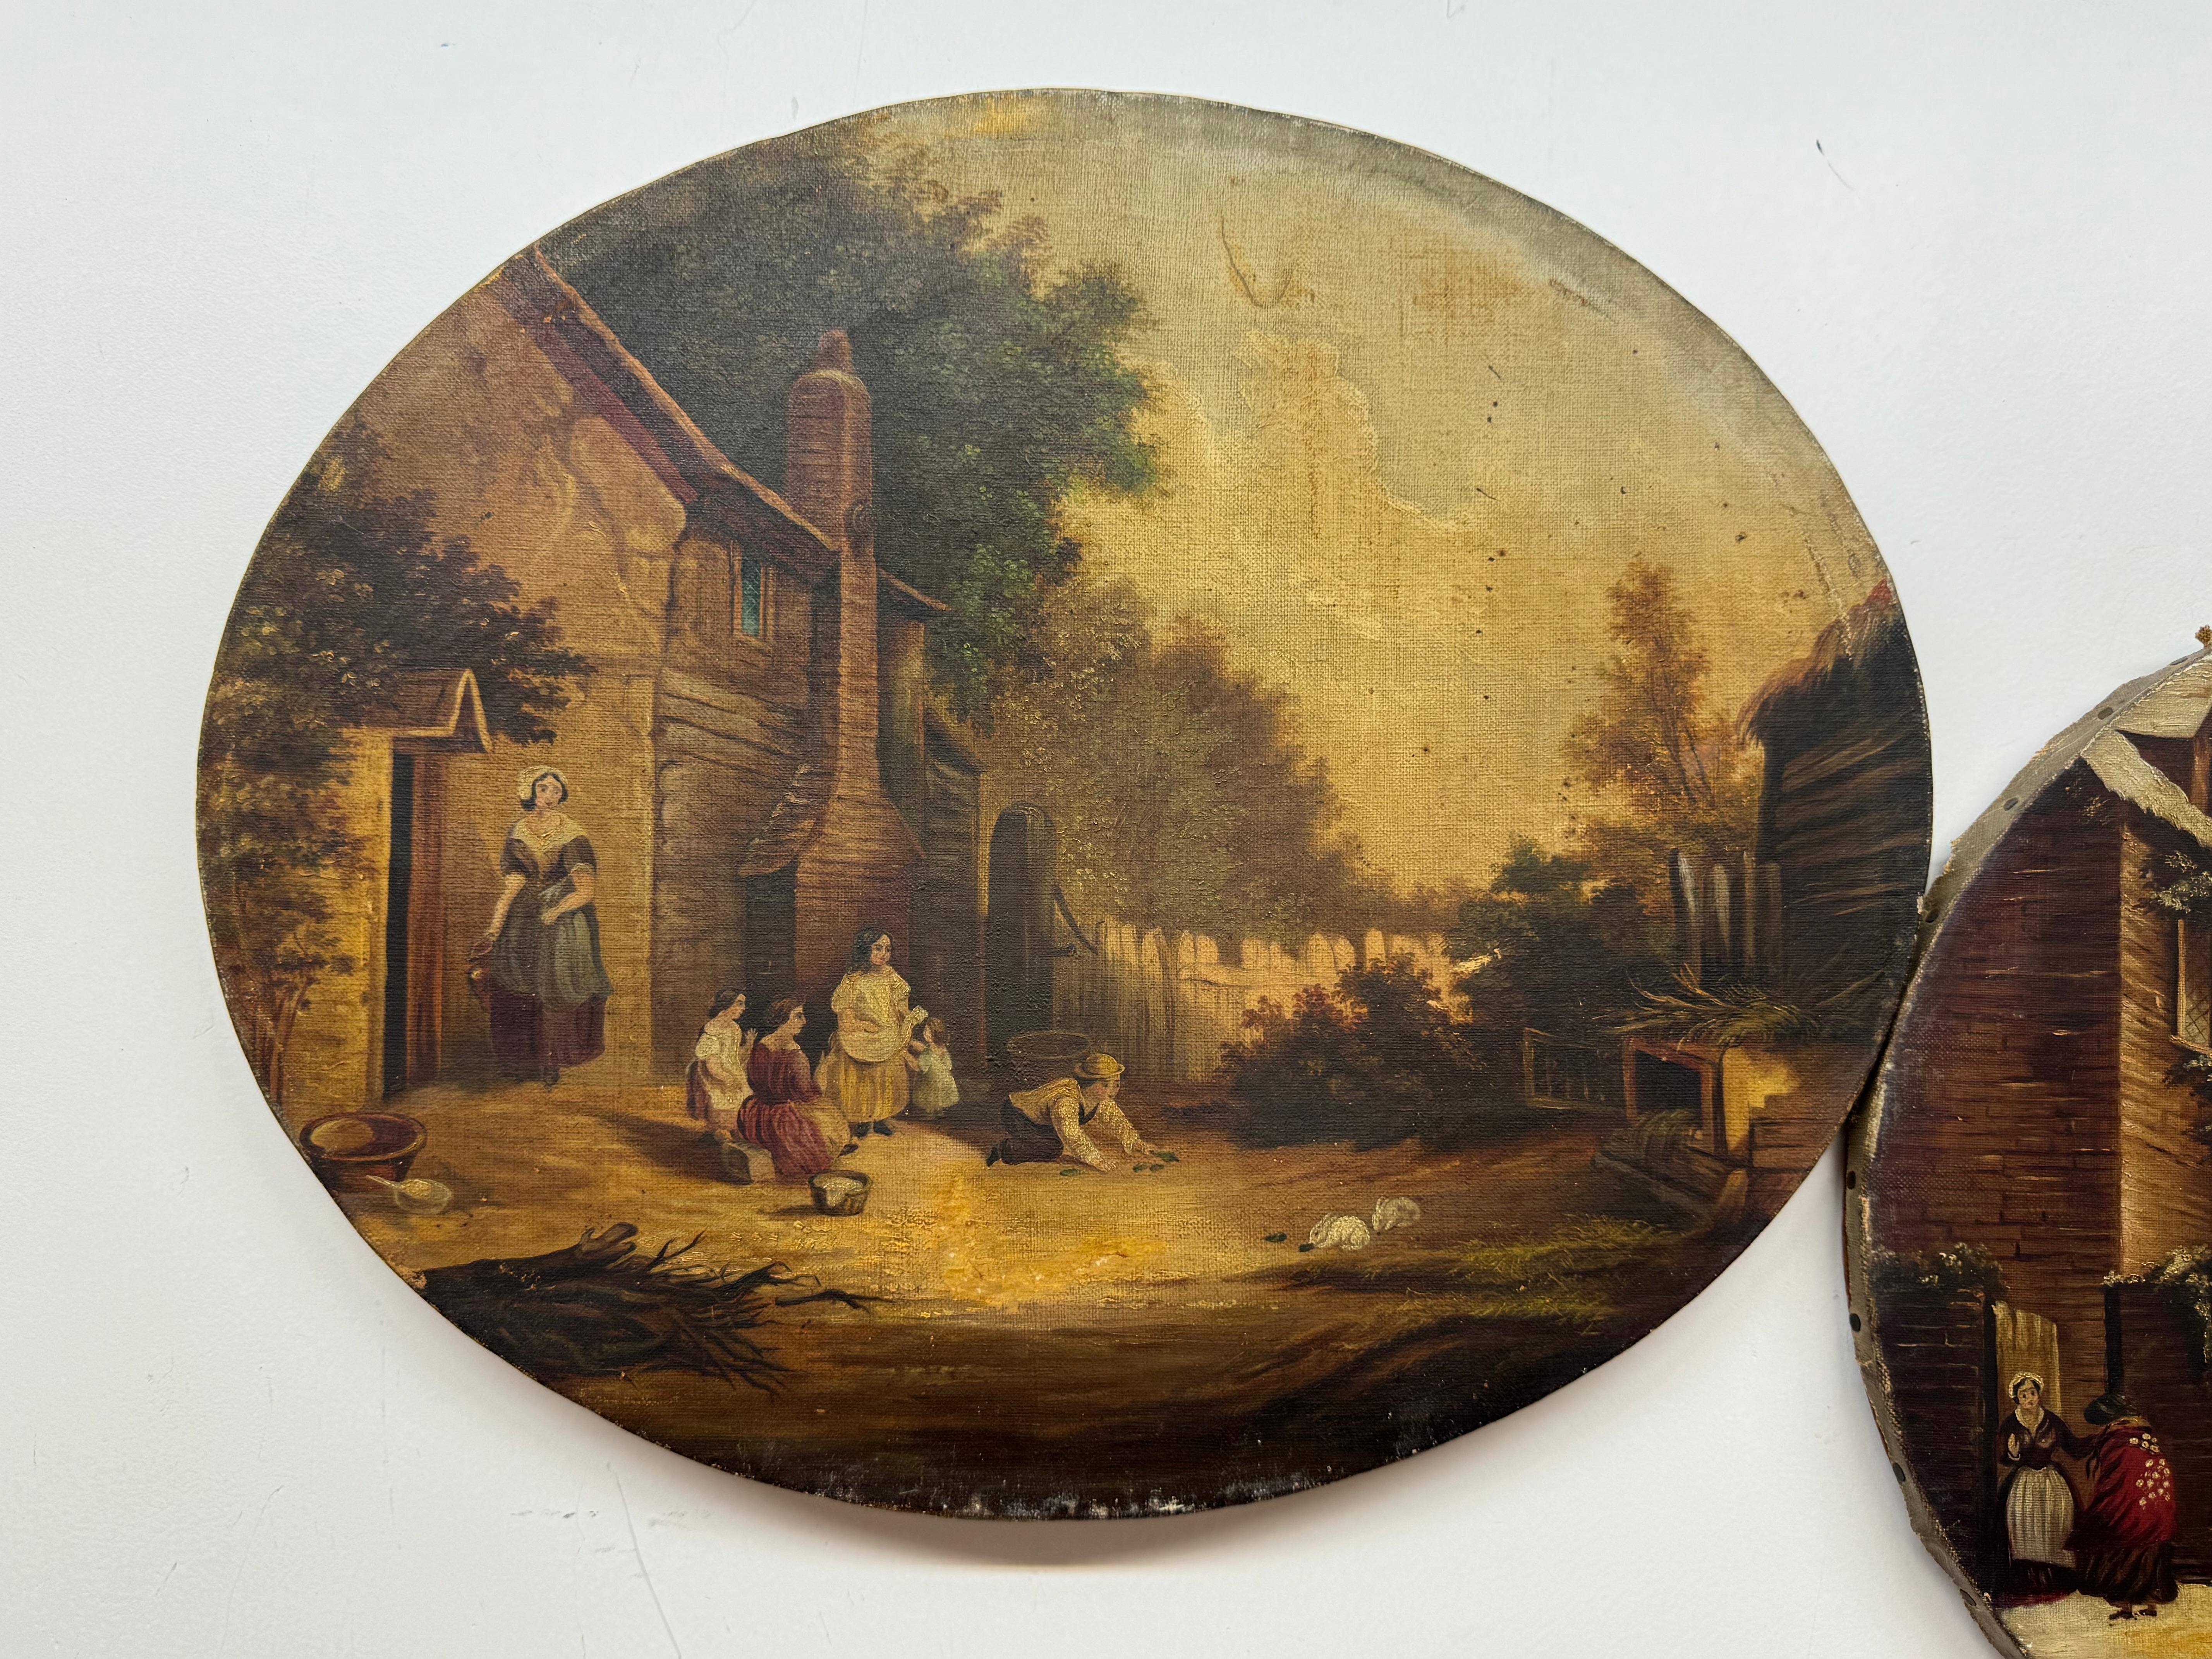 Paire de paysages du 19e siècle - l'un représentant une scène hivernale et l'autre des enfants nourrissant un couple de lapins

Pas de signature visible 

14 x 17 sans cadre